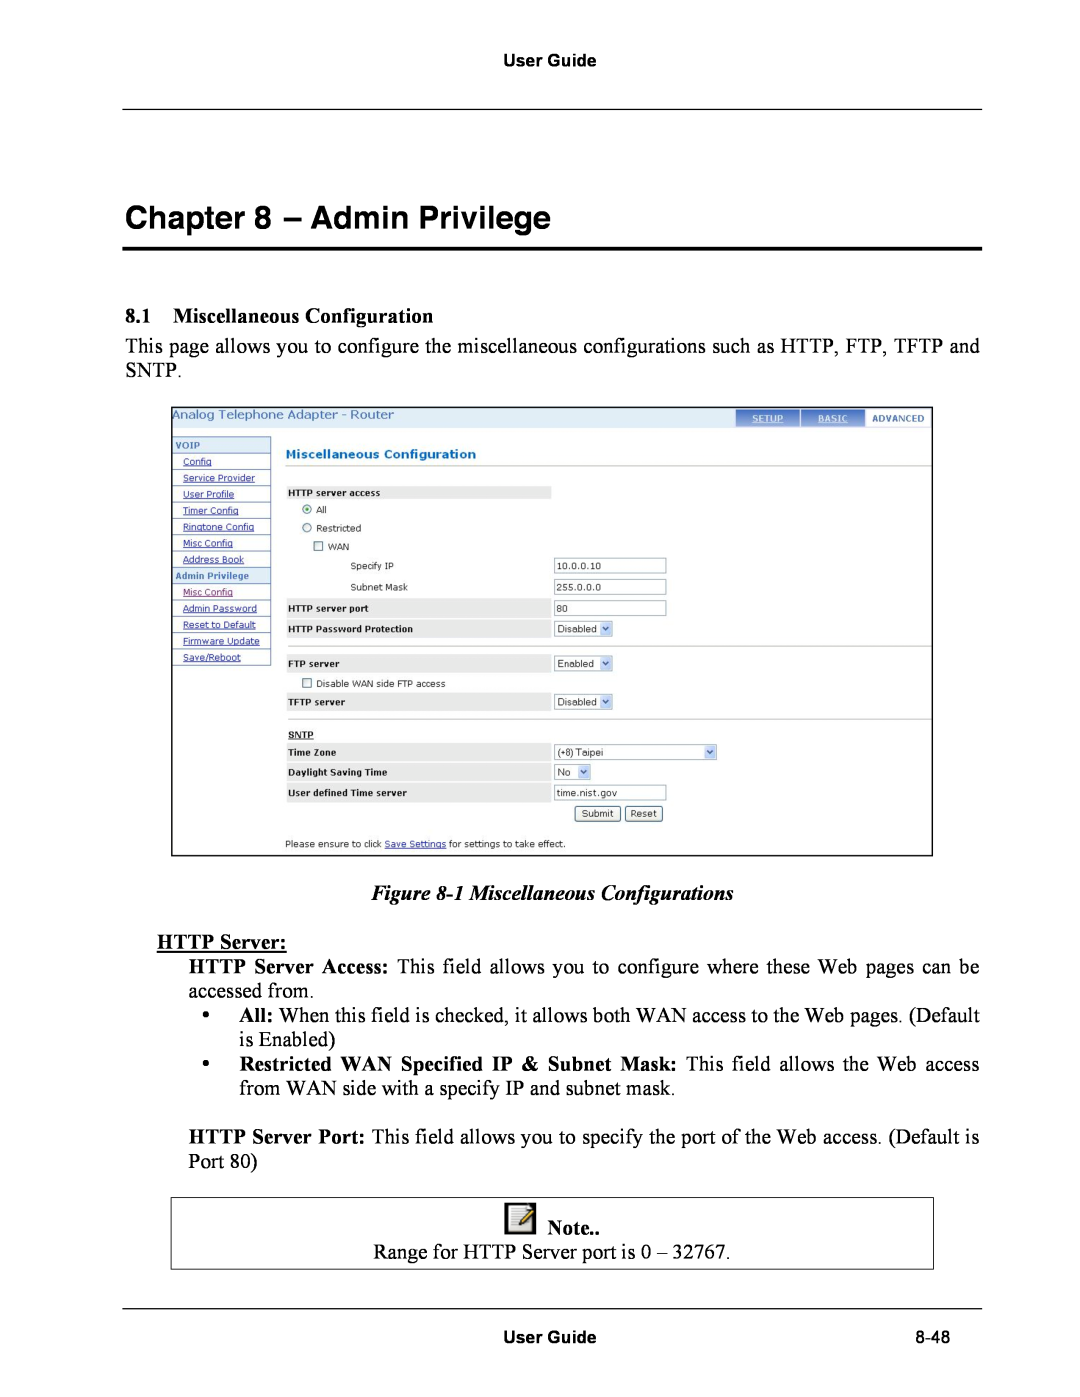 Netopia Network Adapater manual Admin Privilege, 1 Miscellaneous Configurations, HTTP Server 